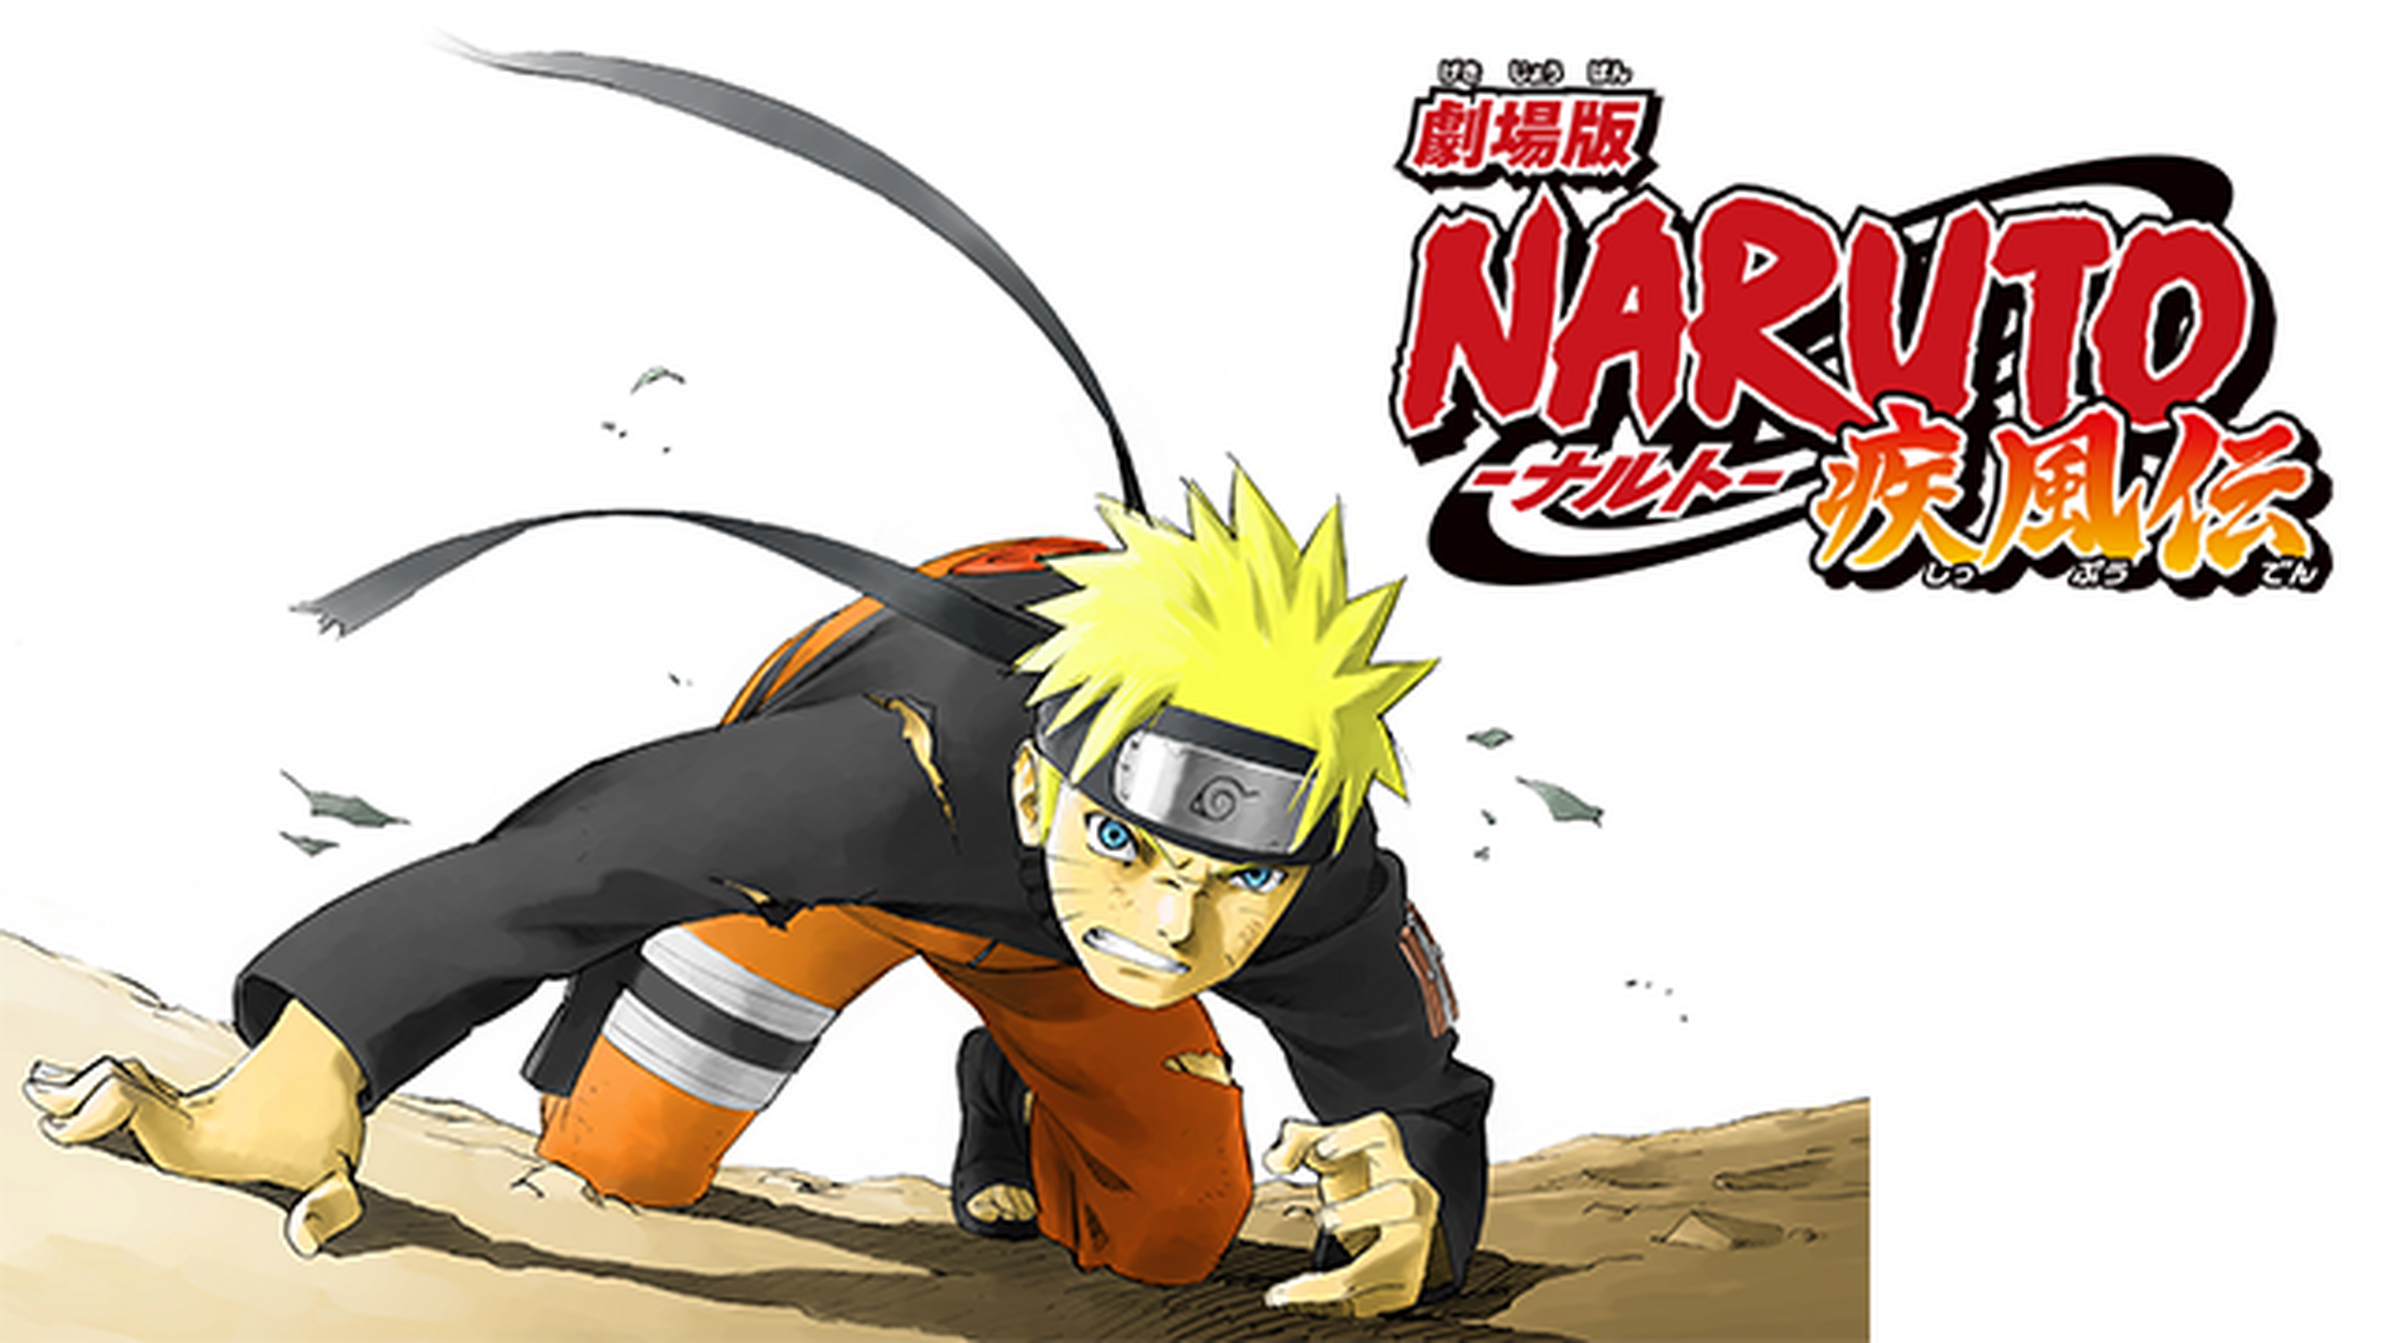 劇場版 Naruto ナルト 疾風伝のアニメ無料動画をフル視聴する方法と配信サービス一覧まとめ アニメ大全